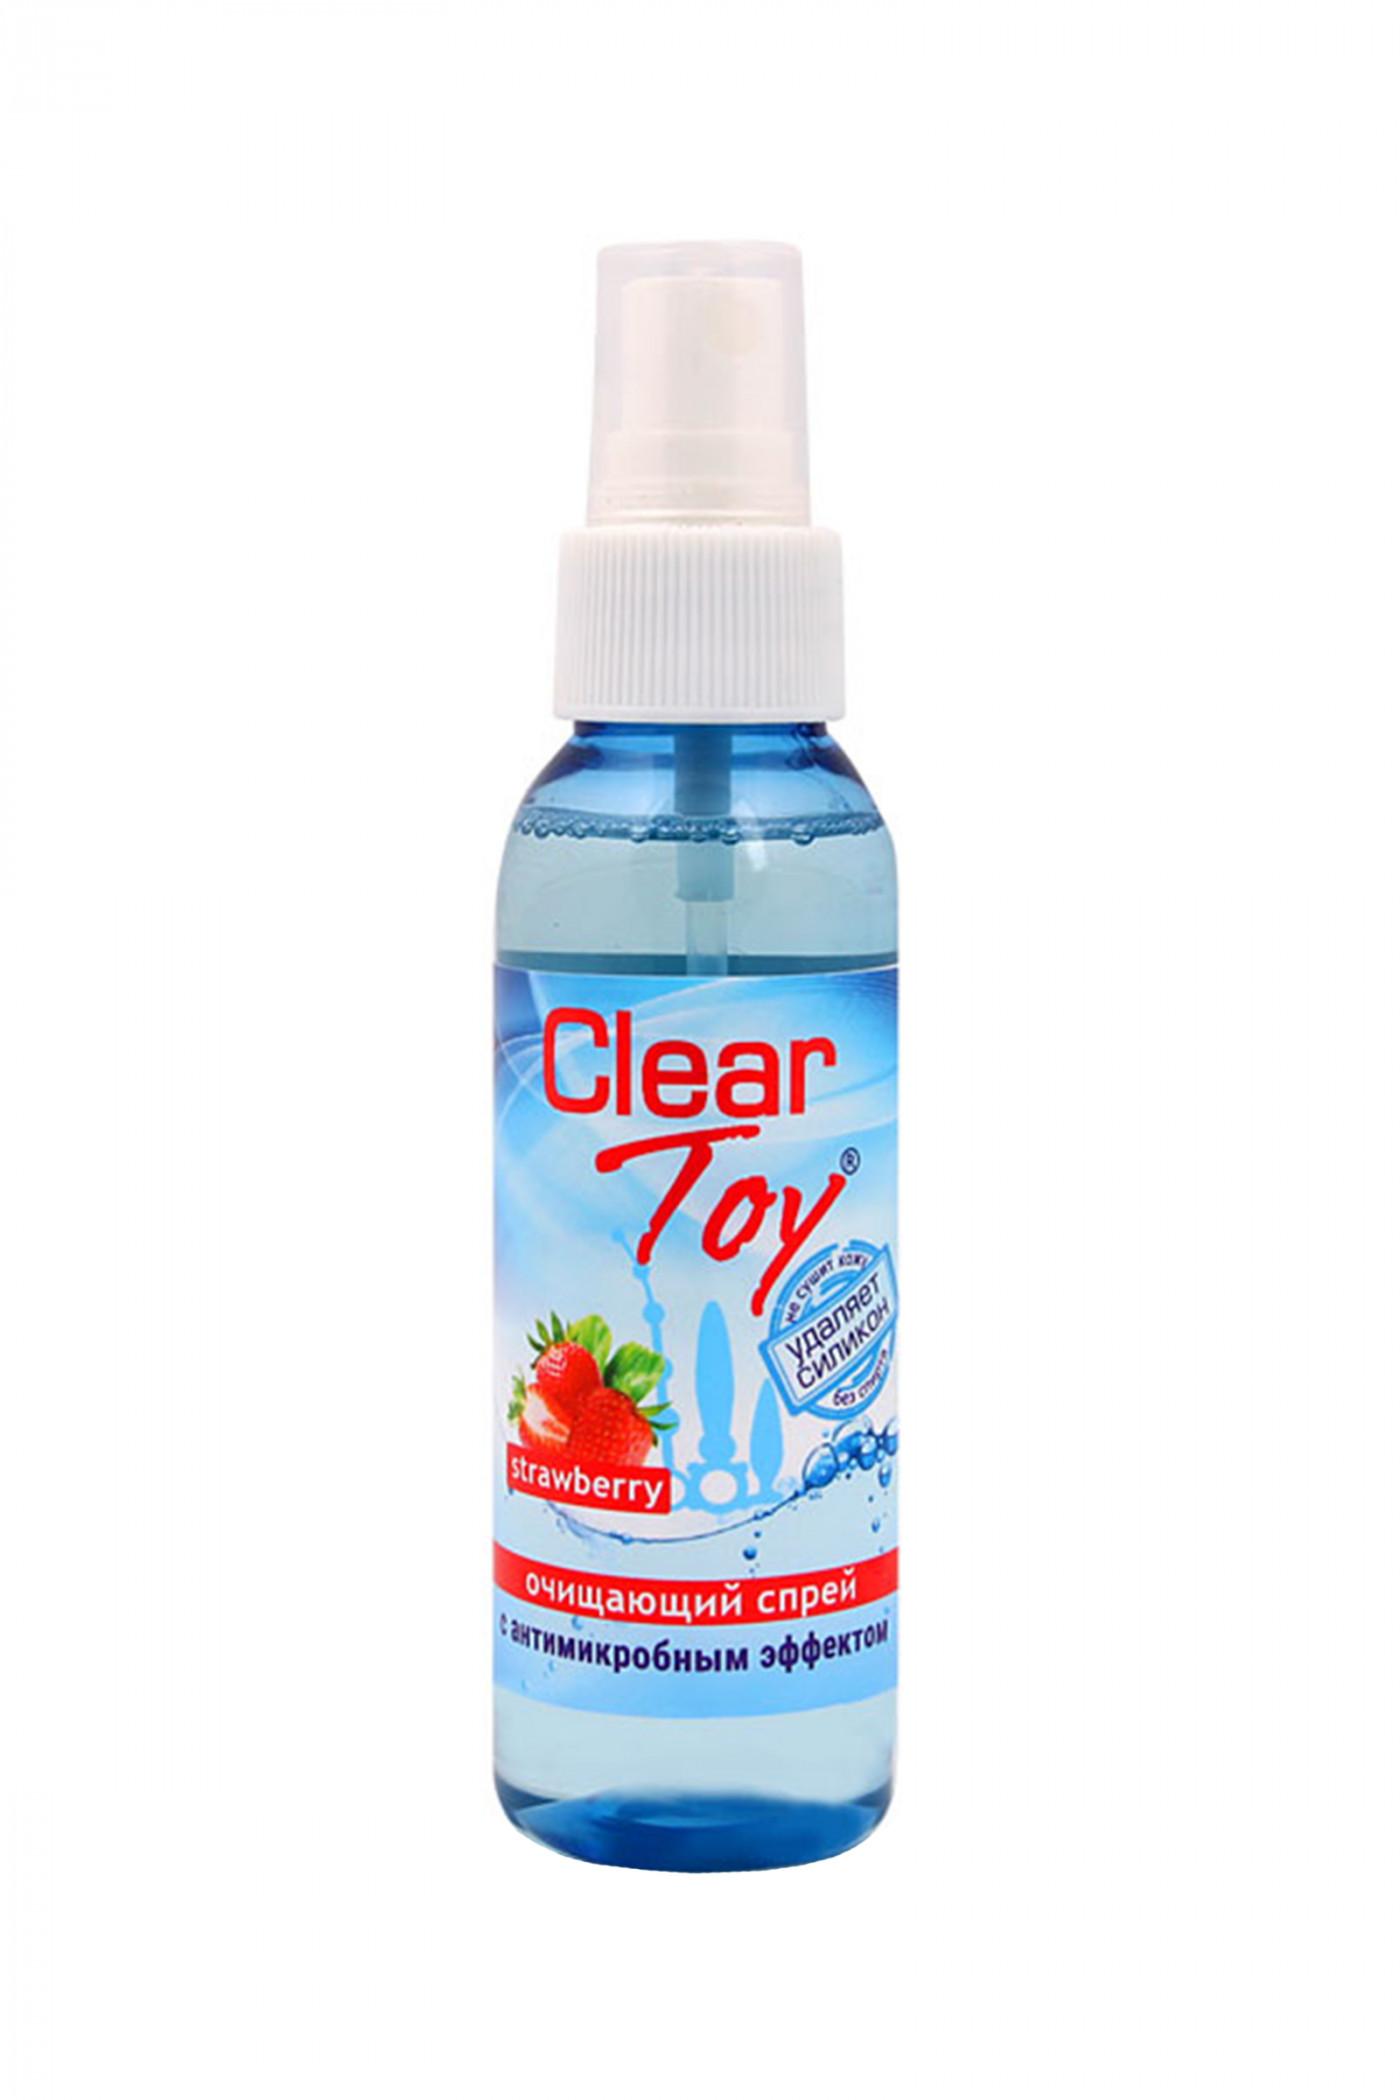 Очищающий спрей  ''Clear toys strawberry '' с антимикробным эффектом 100 мл